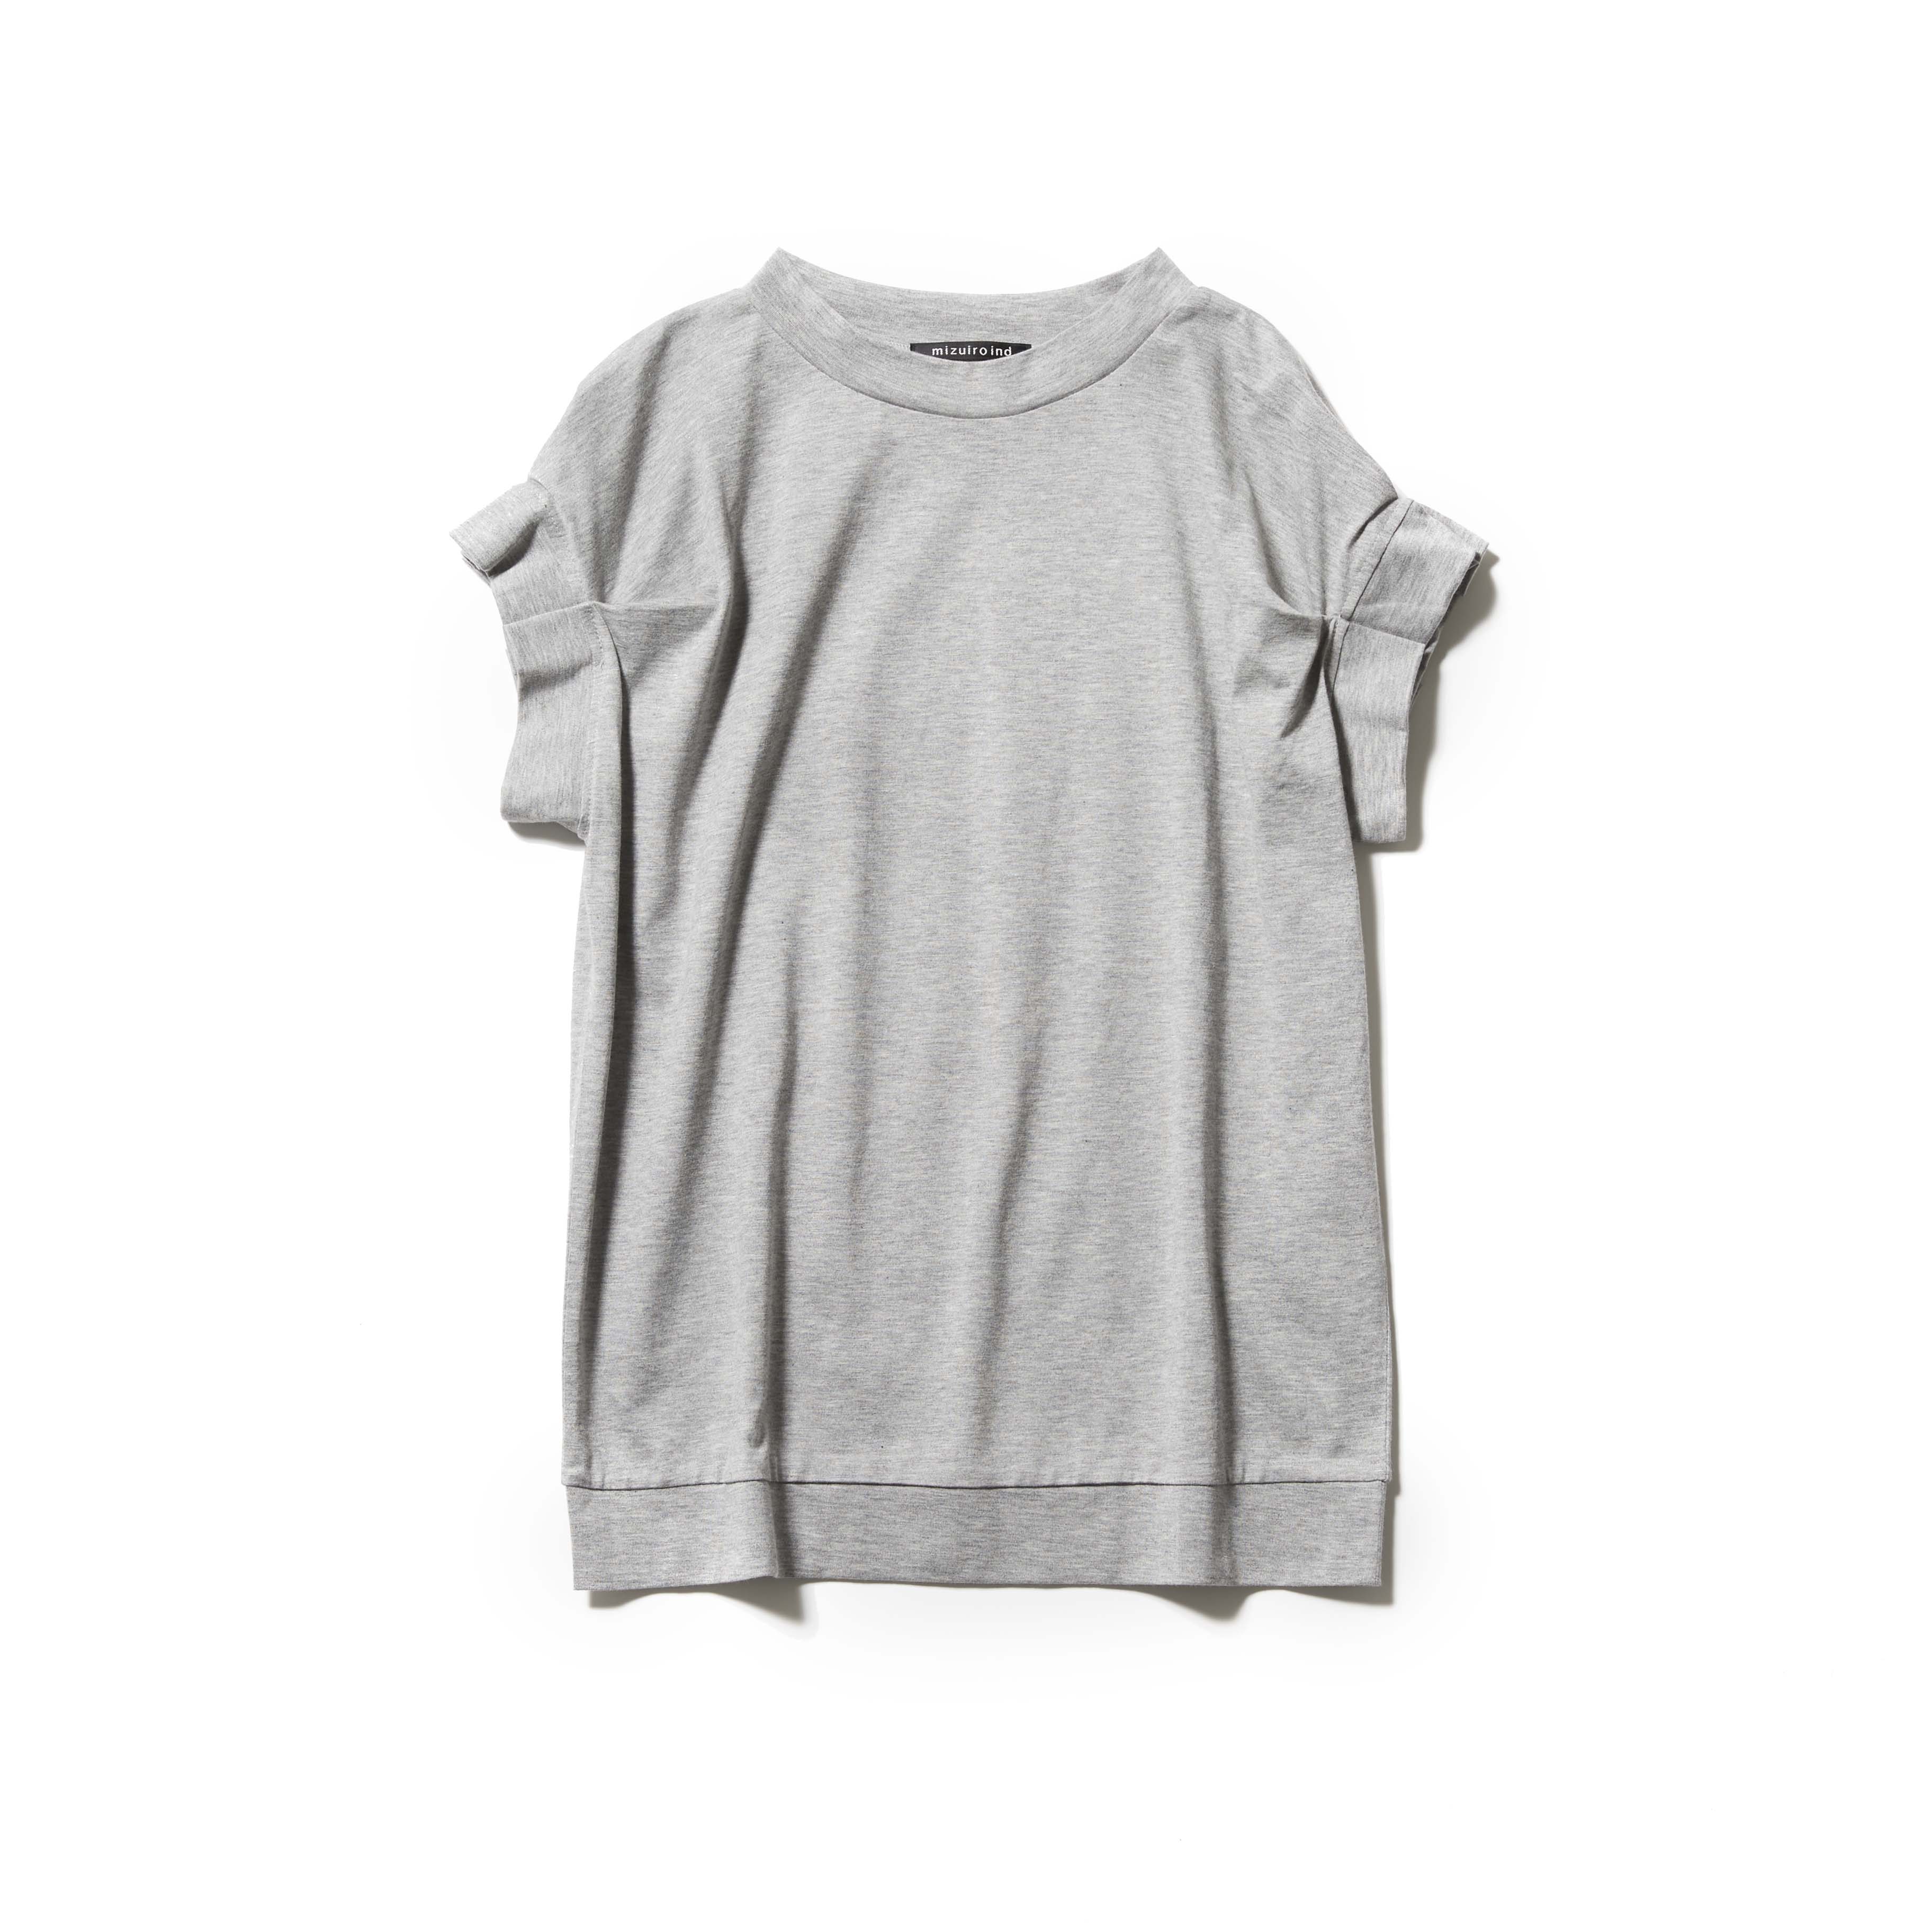 【Fashion】甘過ぎないフリル袖Tシャツが、いま売れています | hers-web.jp | hers-web.jp